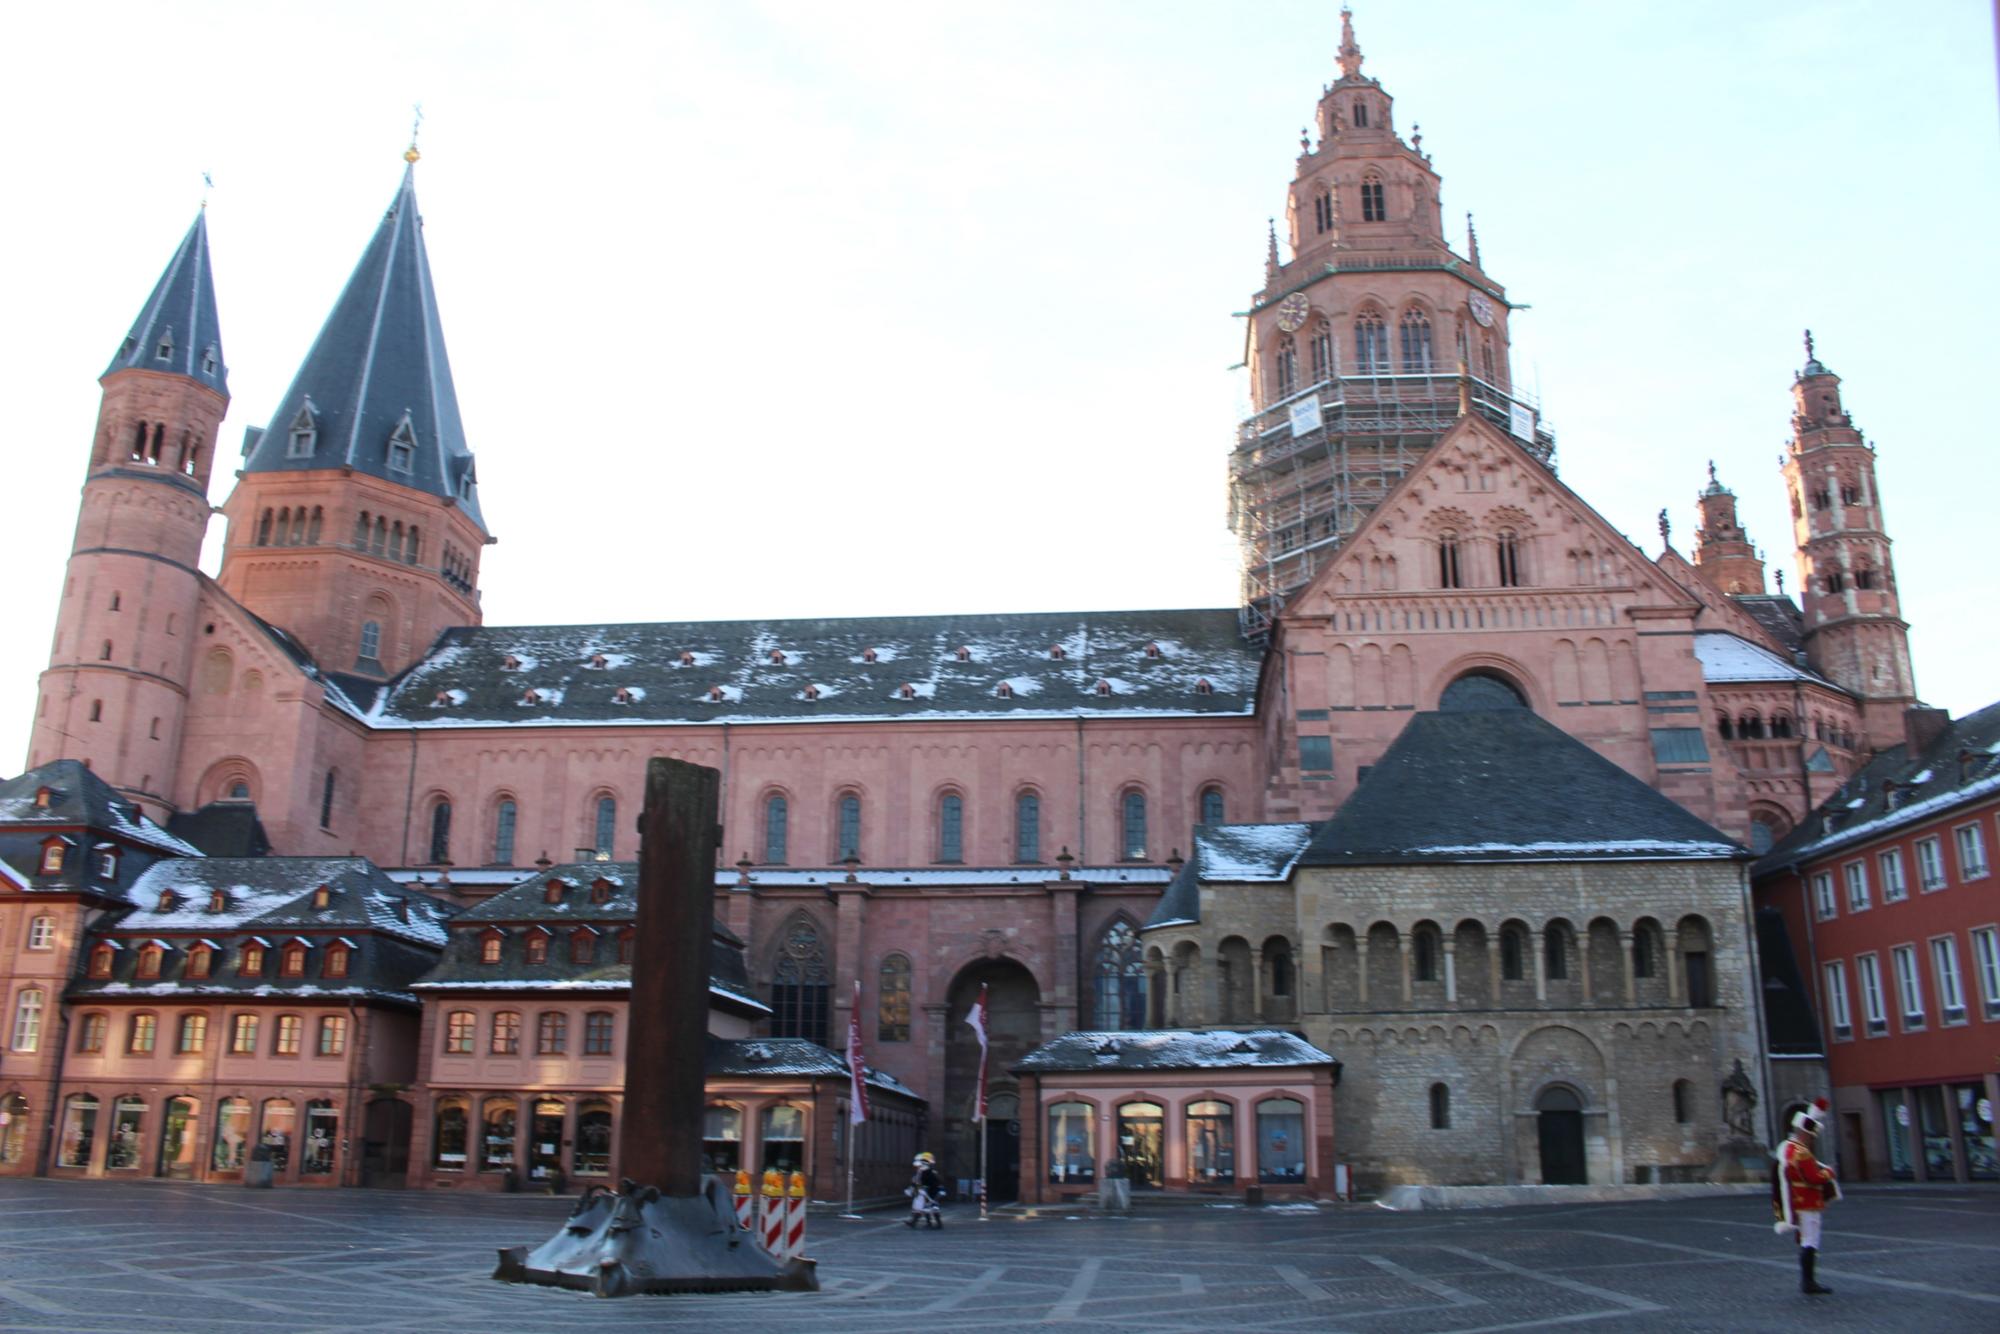 Mainz, 14. Februar 2021: Vor dem Mainzer Dom bleibt das Fastnachter-Aufkommen am Fastnachtssonntag sehr überschaubar. (c) Bistum Mainz / Blum